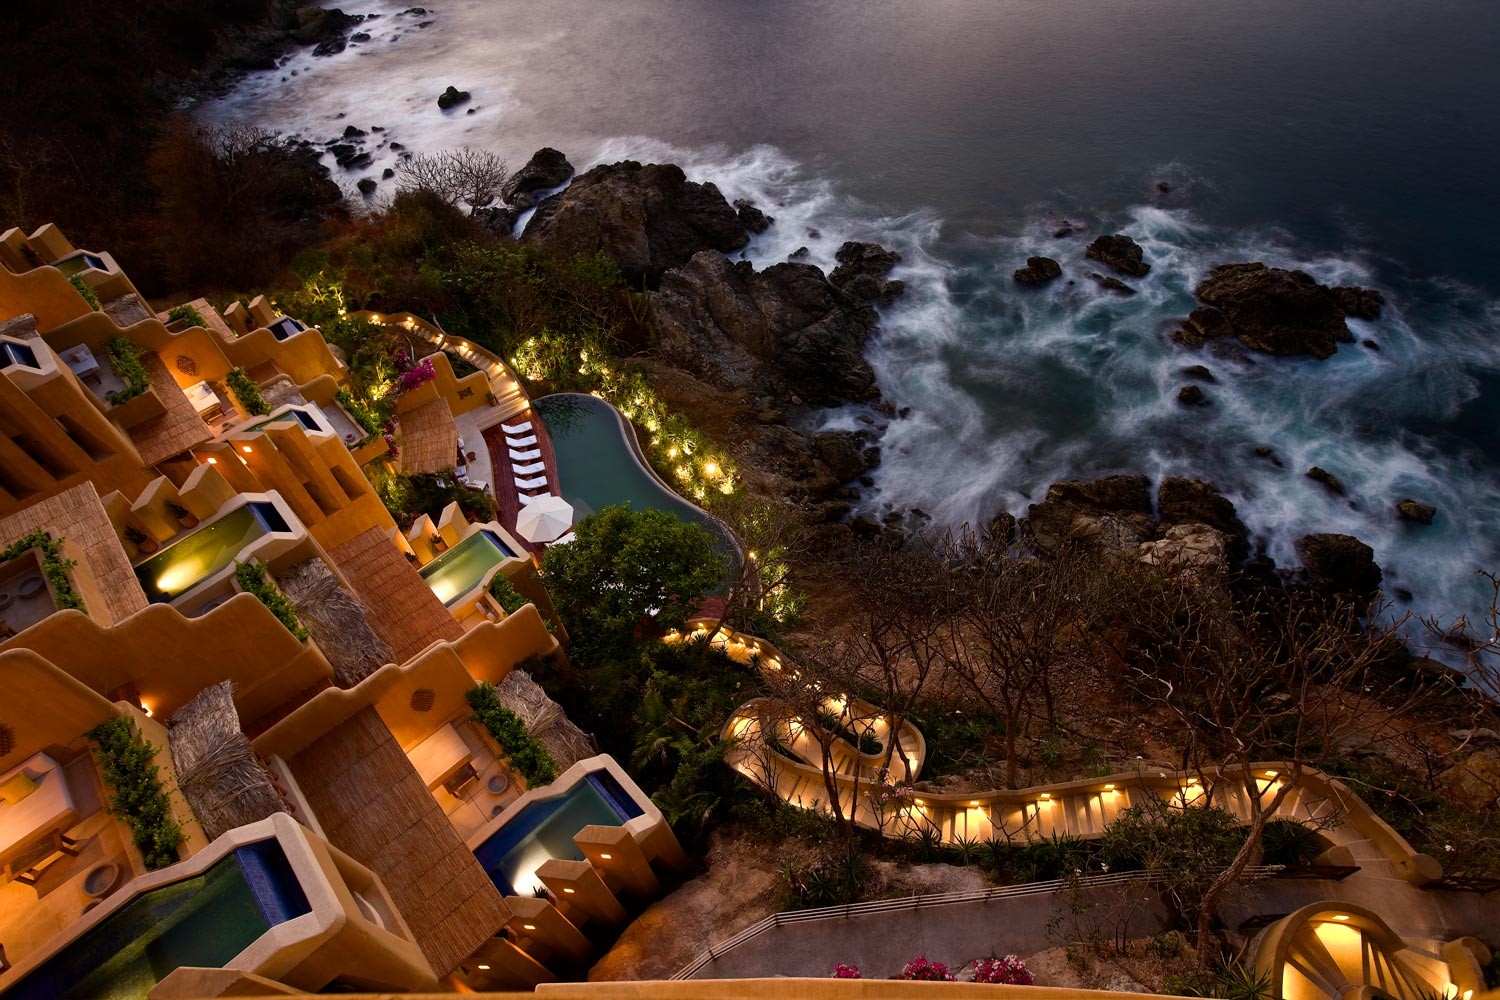 beachfront hotels